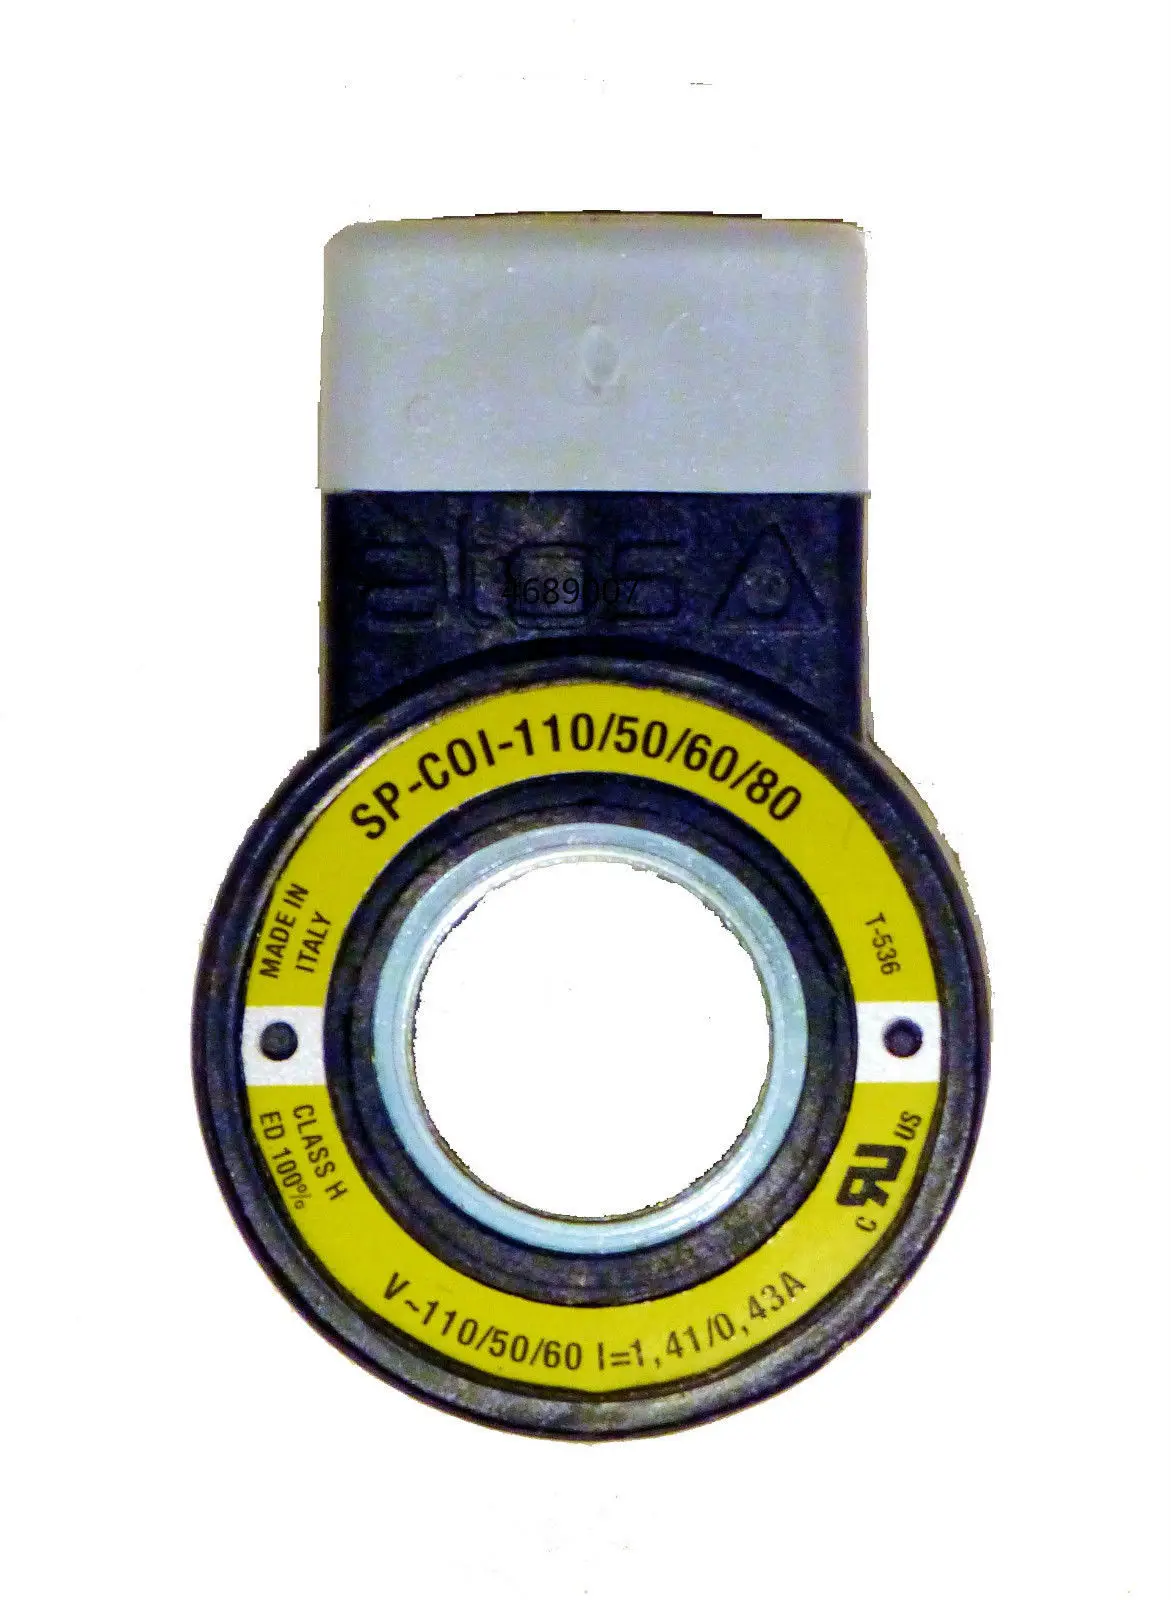 SP-COI-110/50/60/80 AC Atos магнит-шпуле Ventil соленоидная катушка клапан SP-C01-110/50/60/80 |